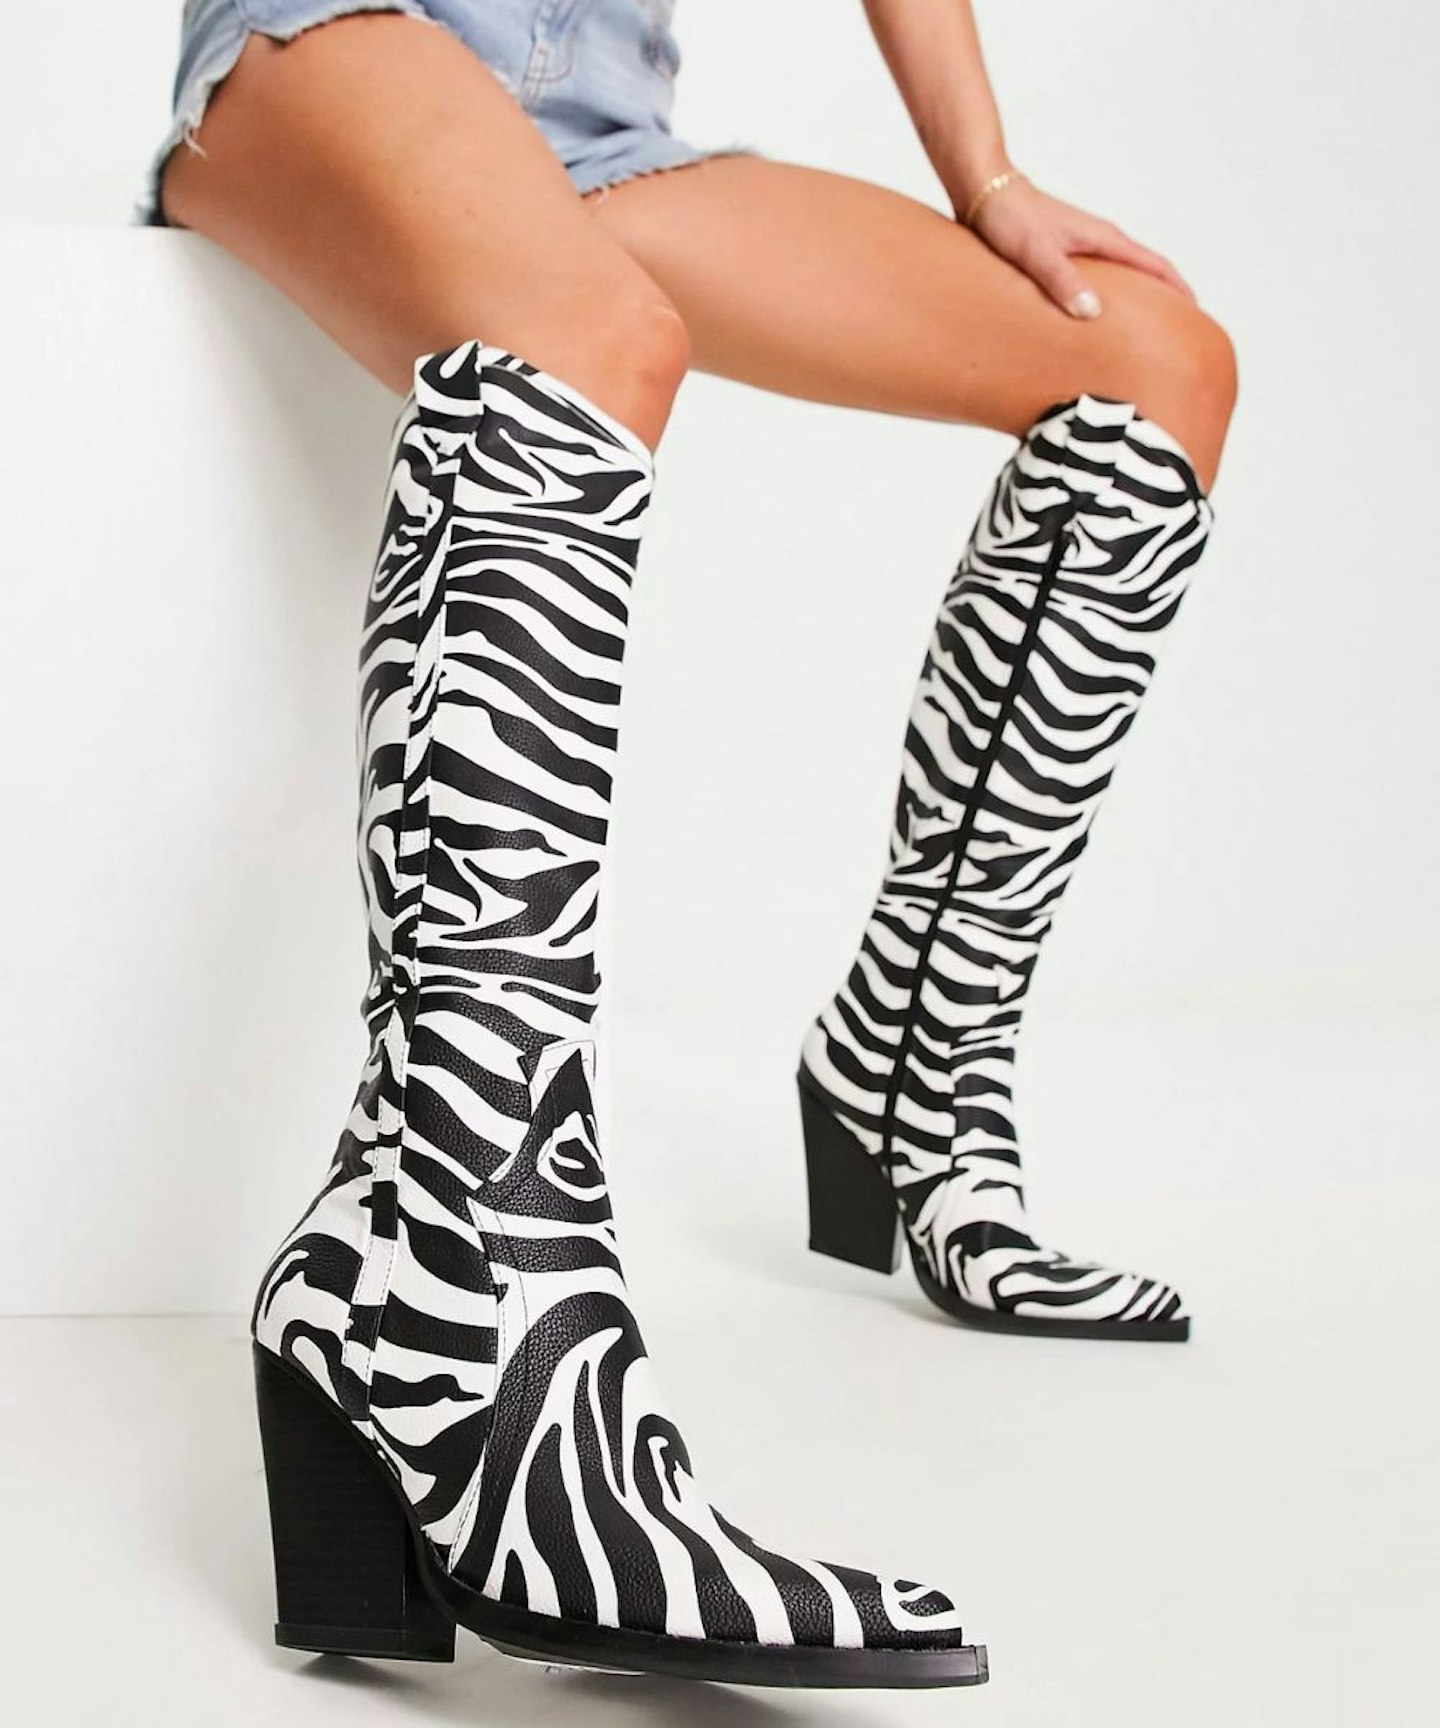 ASOS DESIGN Catapult heeled western knee boots in zebra